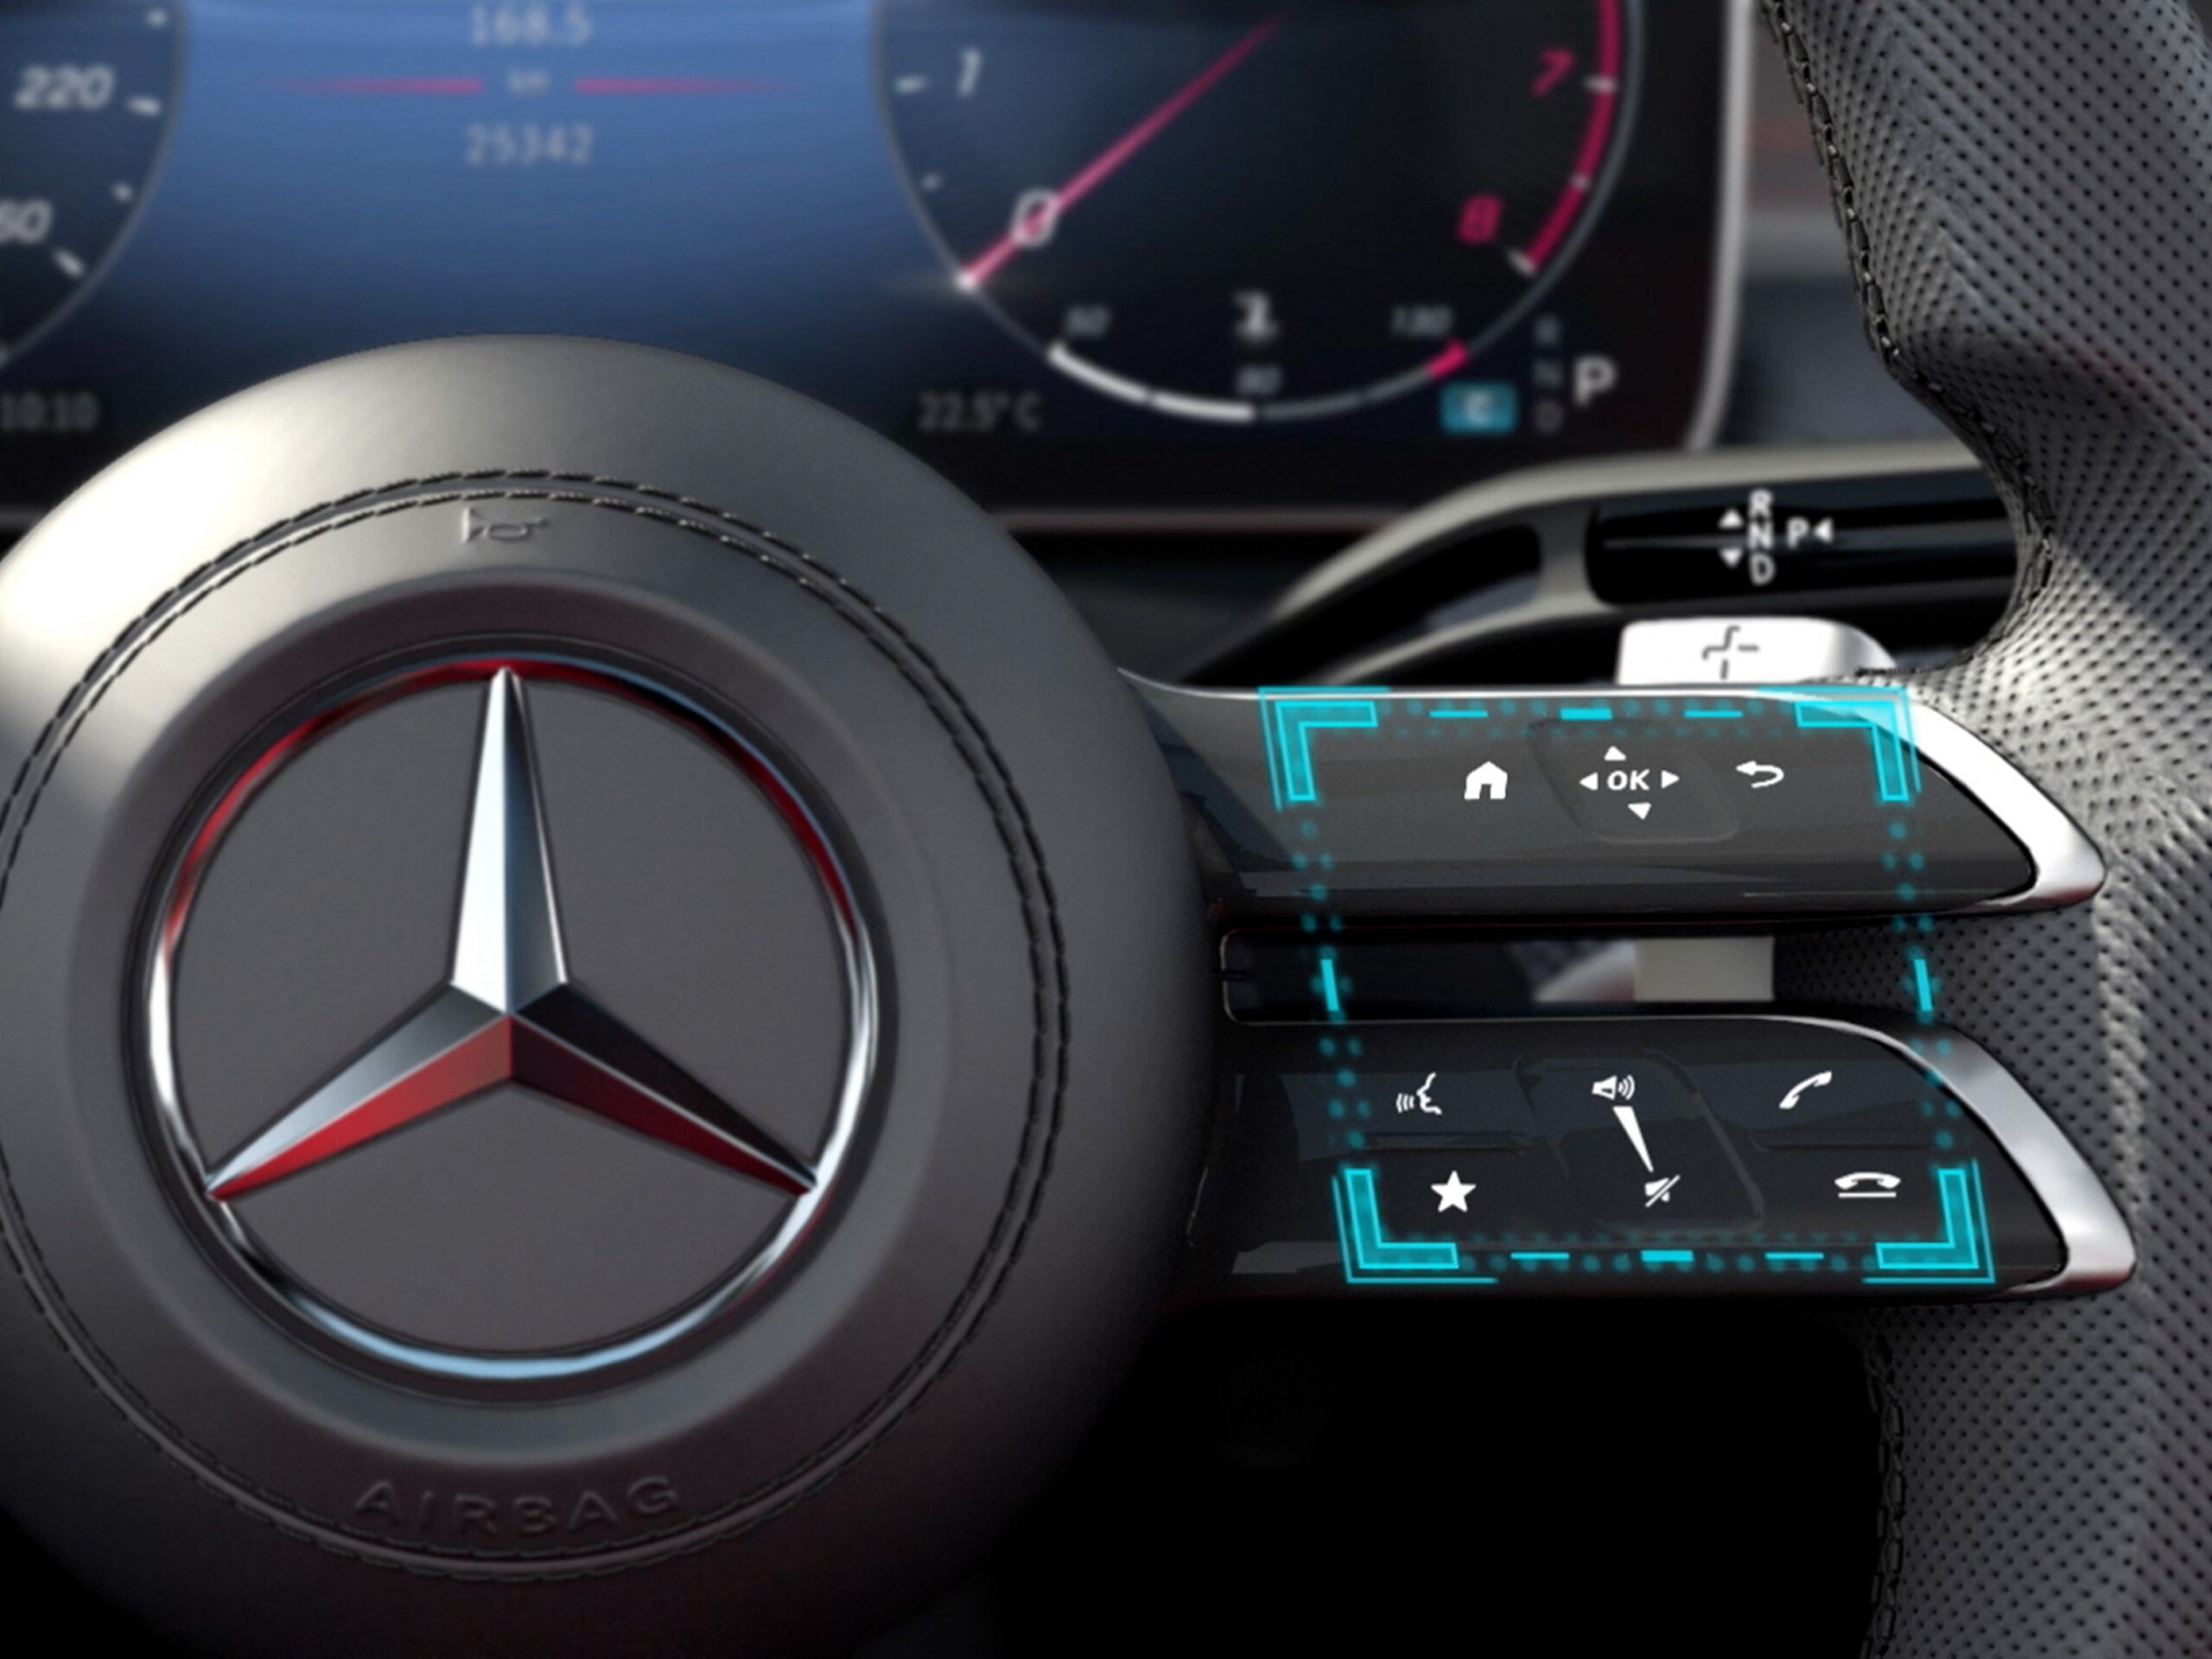 Videoclipul prezintă funcționarea conceptului de operare touch MBUX în modelul Mercedes-Benz Clasa C Limuzină.